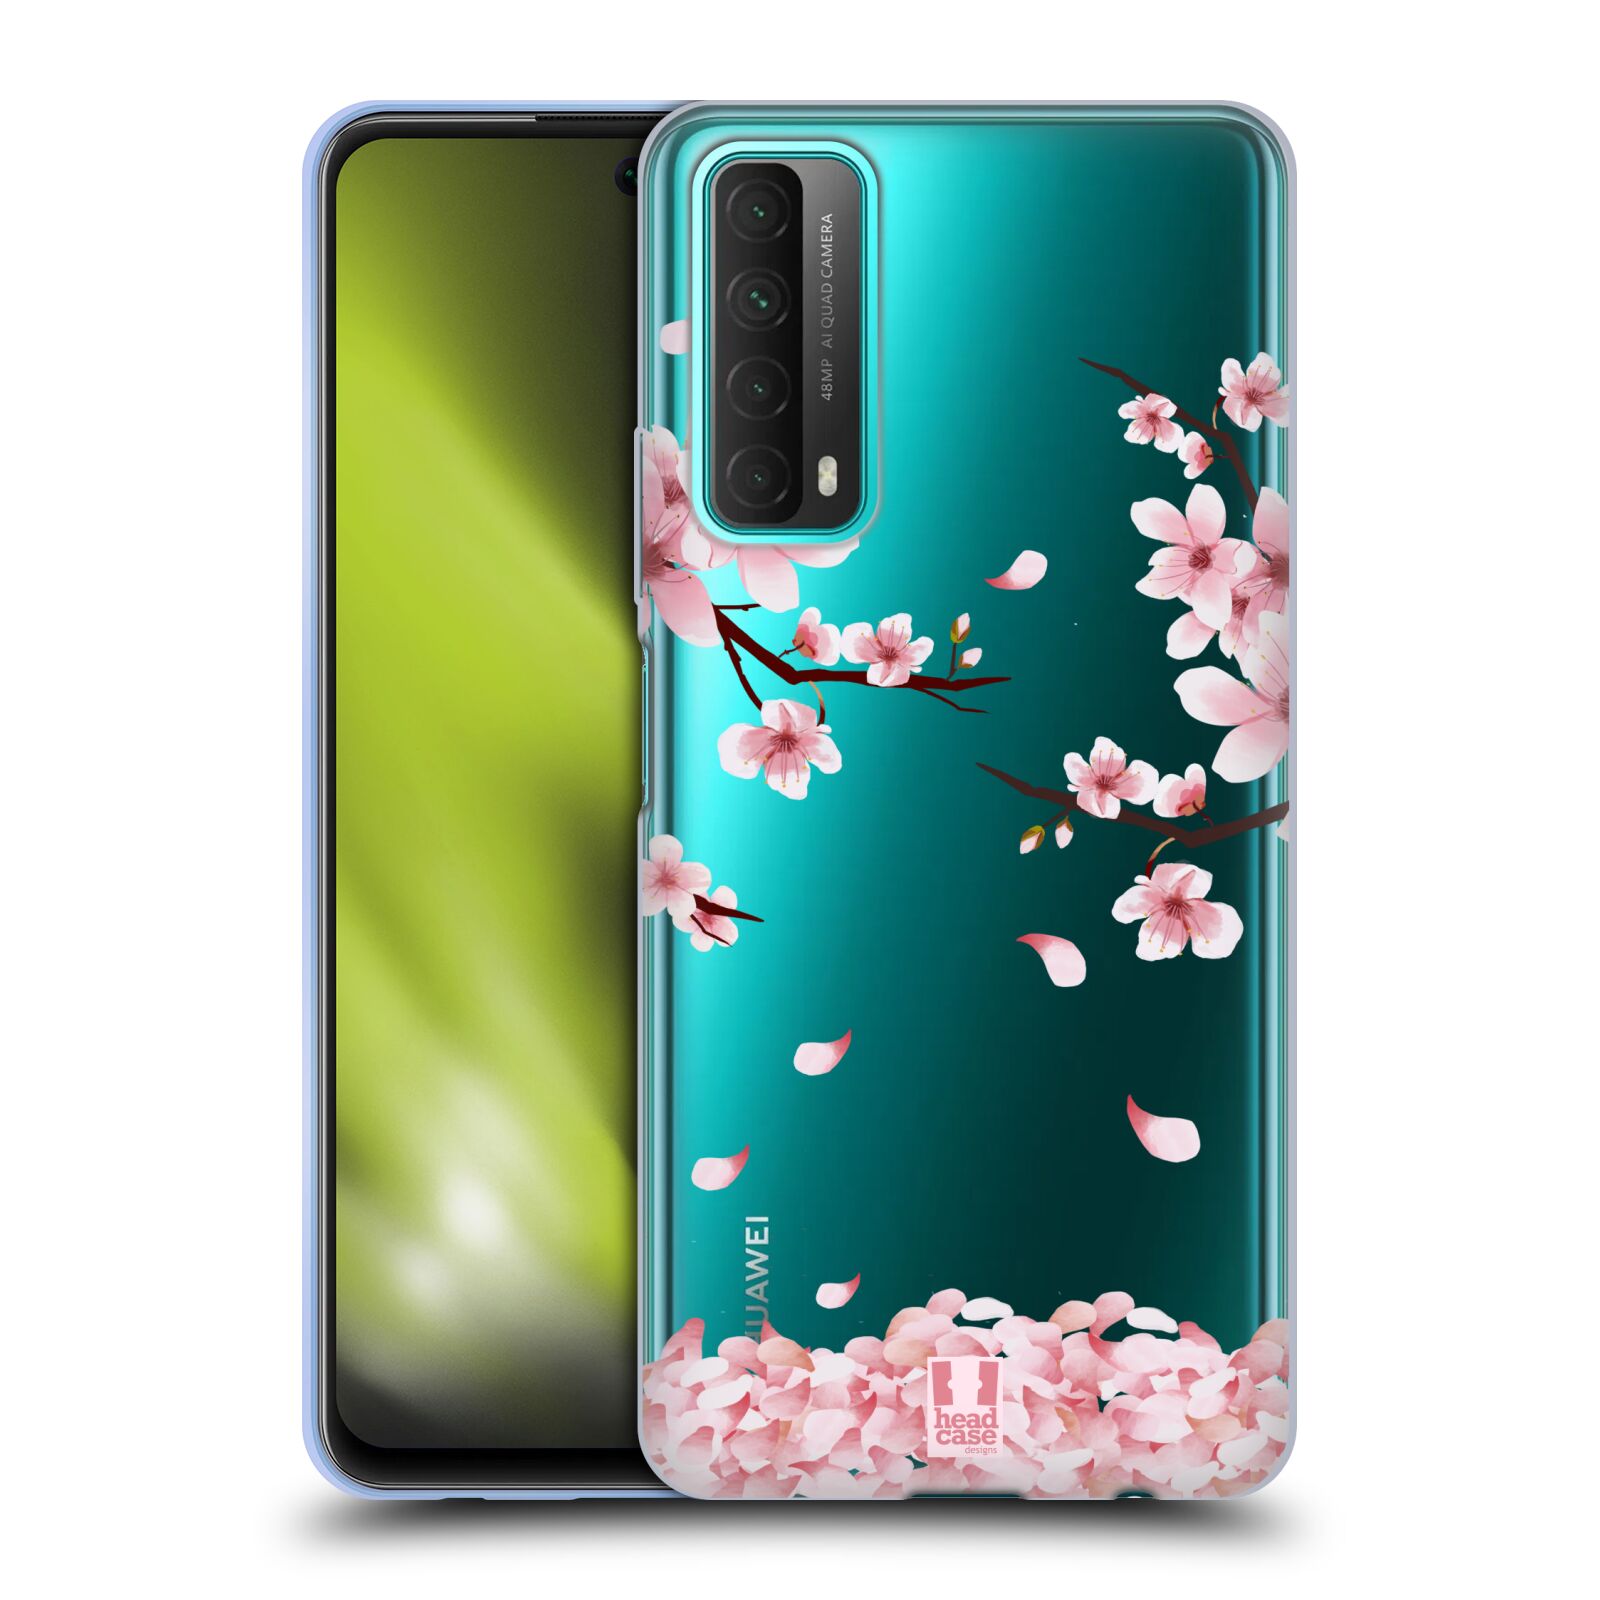 Silikonové pouzdro na mobil Huawei P Smart (2021) - Head Case - Květy a větvičky (Silikonový kryt, obal, pouzdro na mobilní telefon Huawei P Smart (2021) s motivem Květy a větvičky)